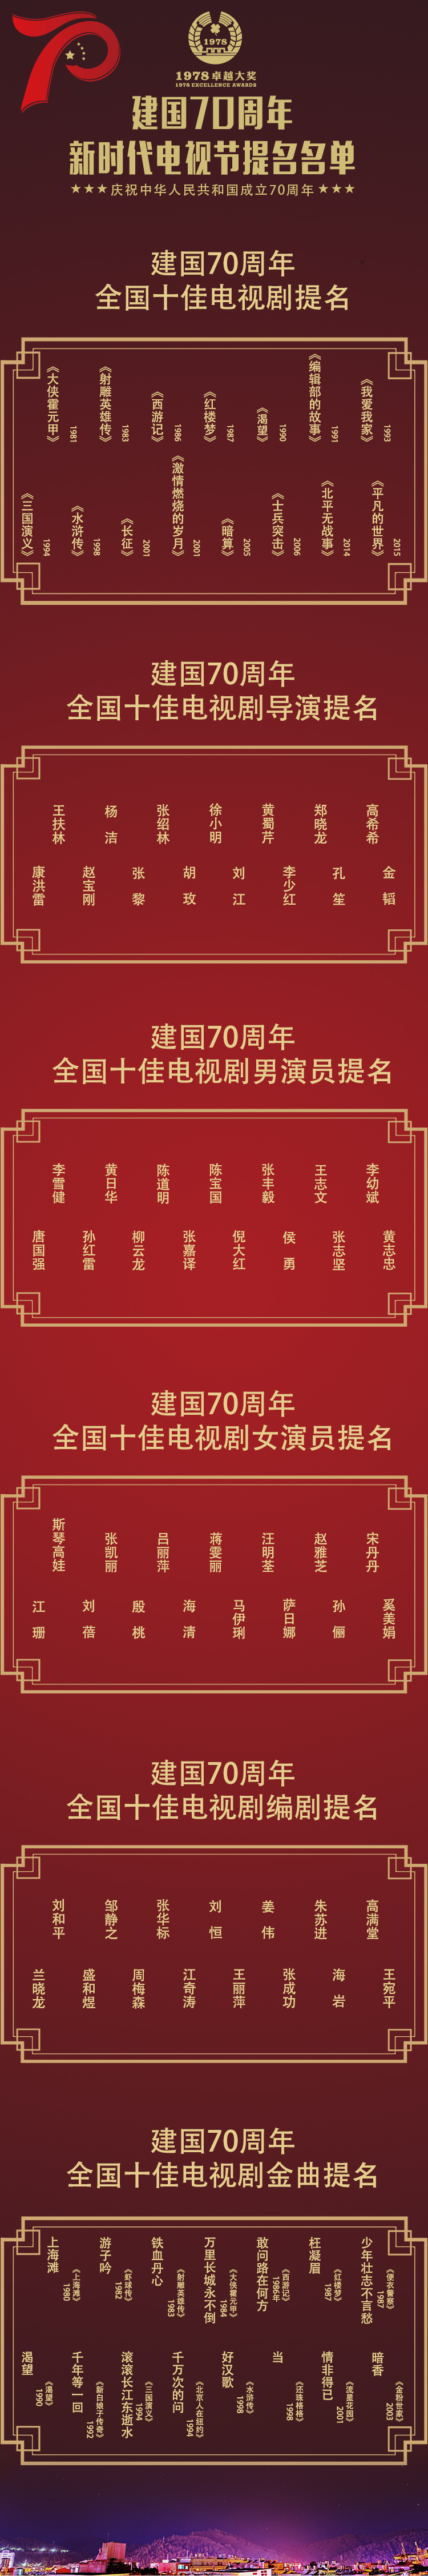 1978卓越大奖“新时代电视节提名”榜单出炉 光影流金中国70载岁月